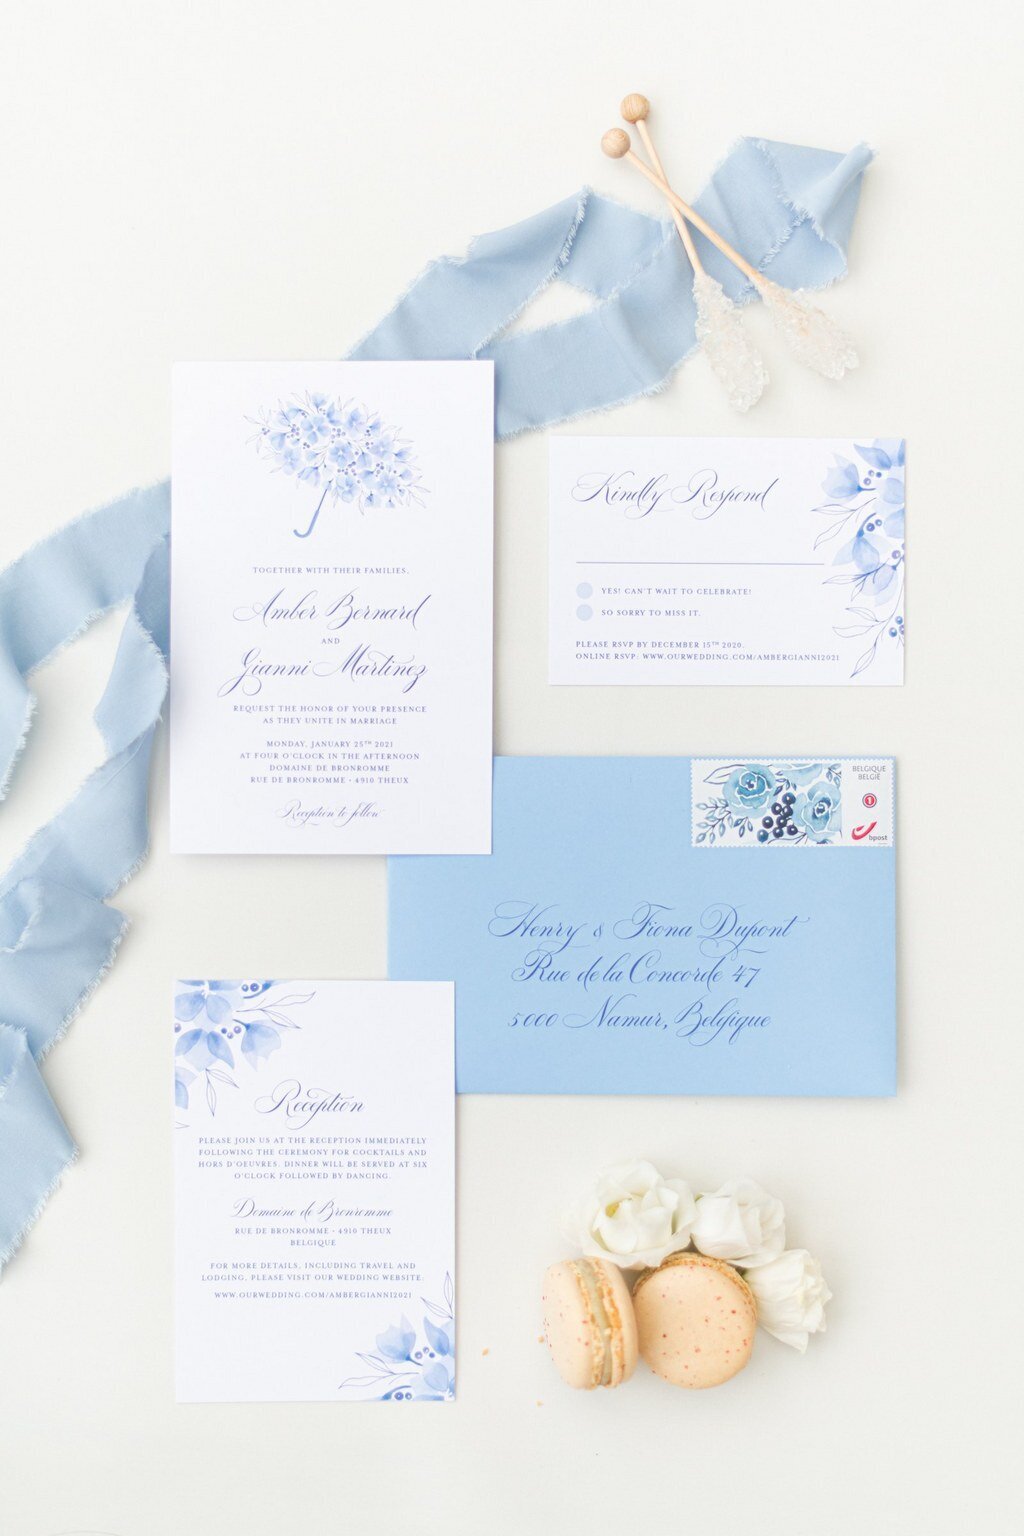 dusty blue wedding invitation set for winter wedding